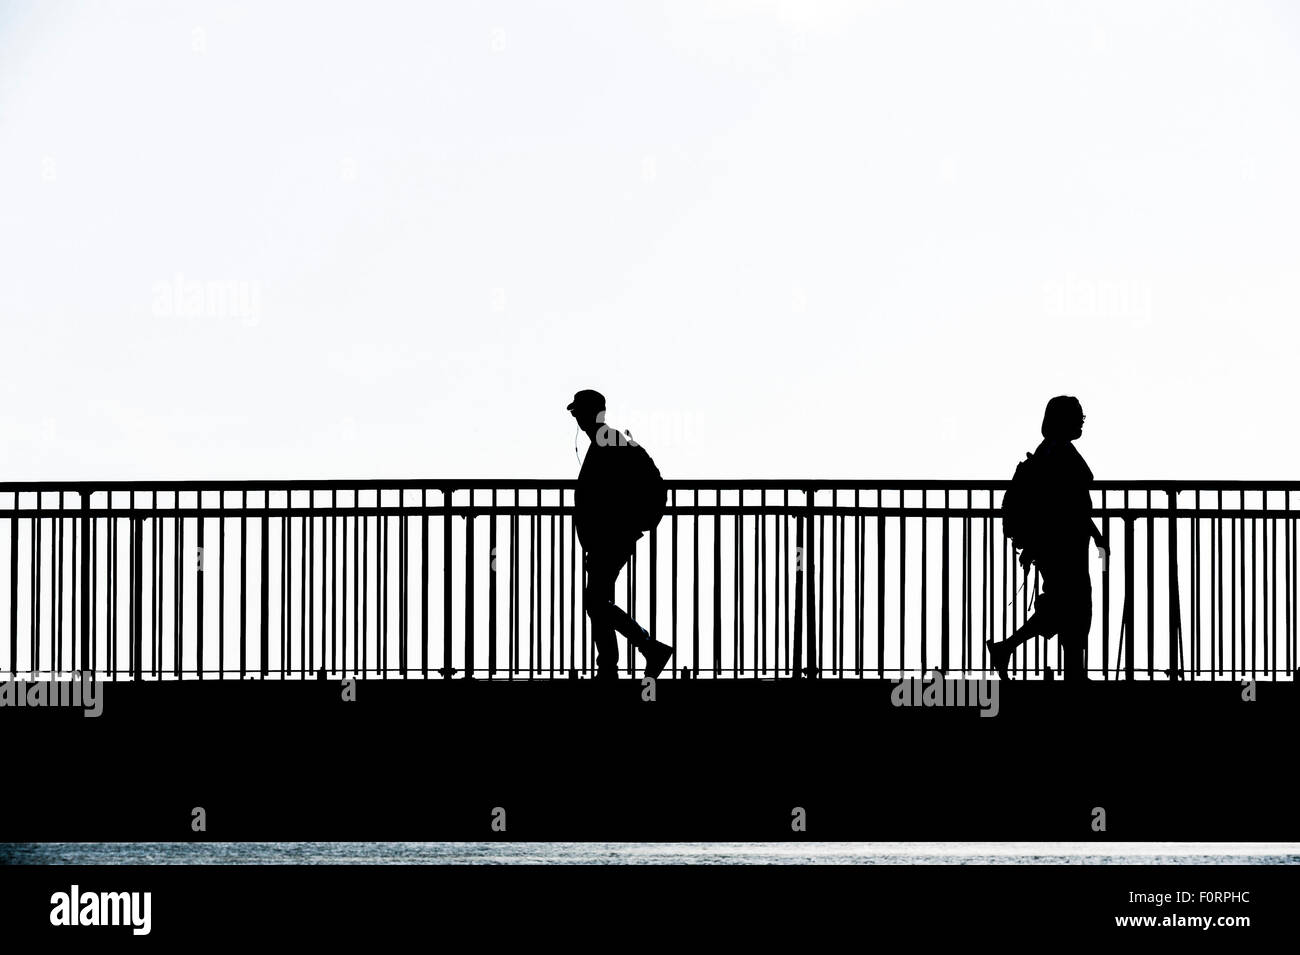 La silhouette di persone che camminano attraverso il Louisa Gap Bridge in Broadstairs Kent. Foto Stock